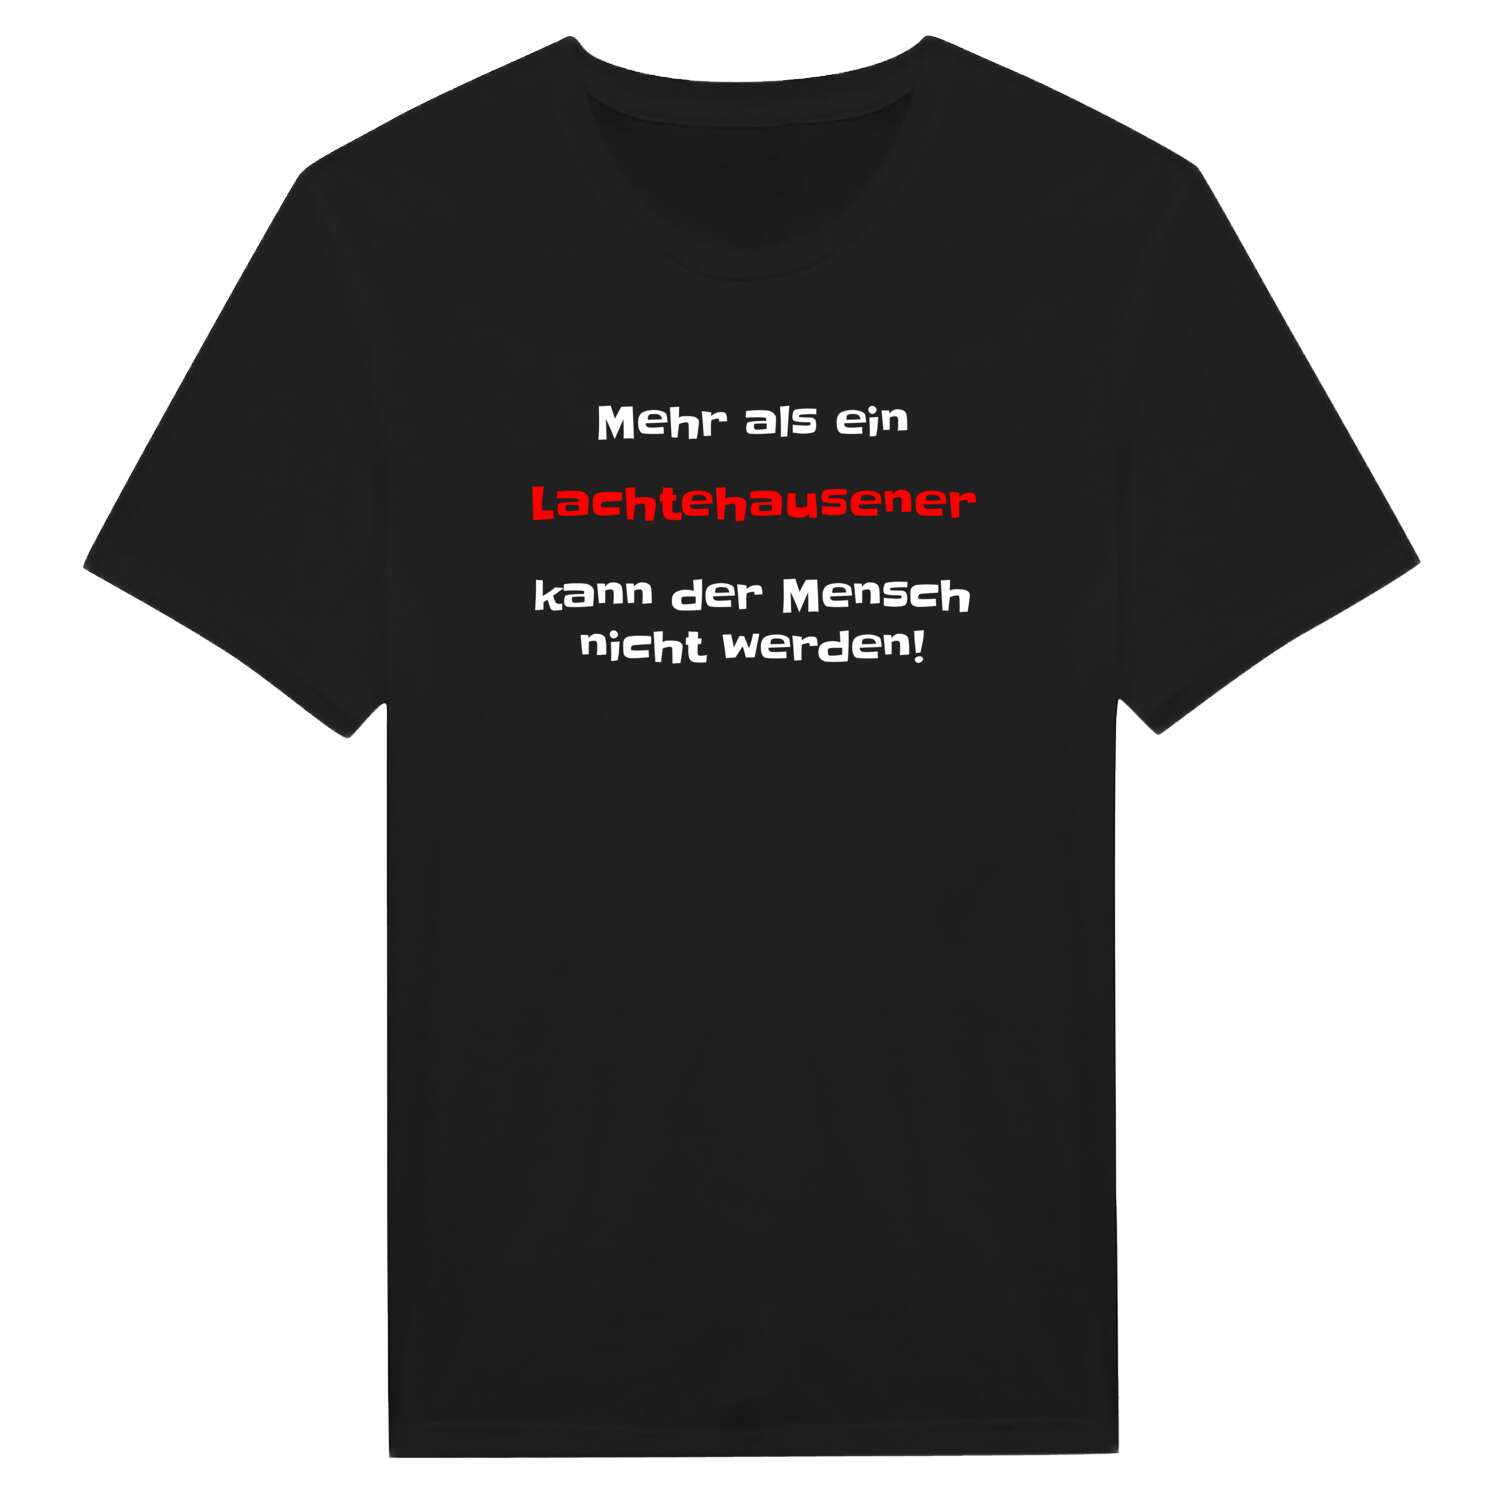 Lachtehausen T-Shirt »Mehr als ein«